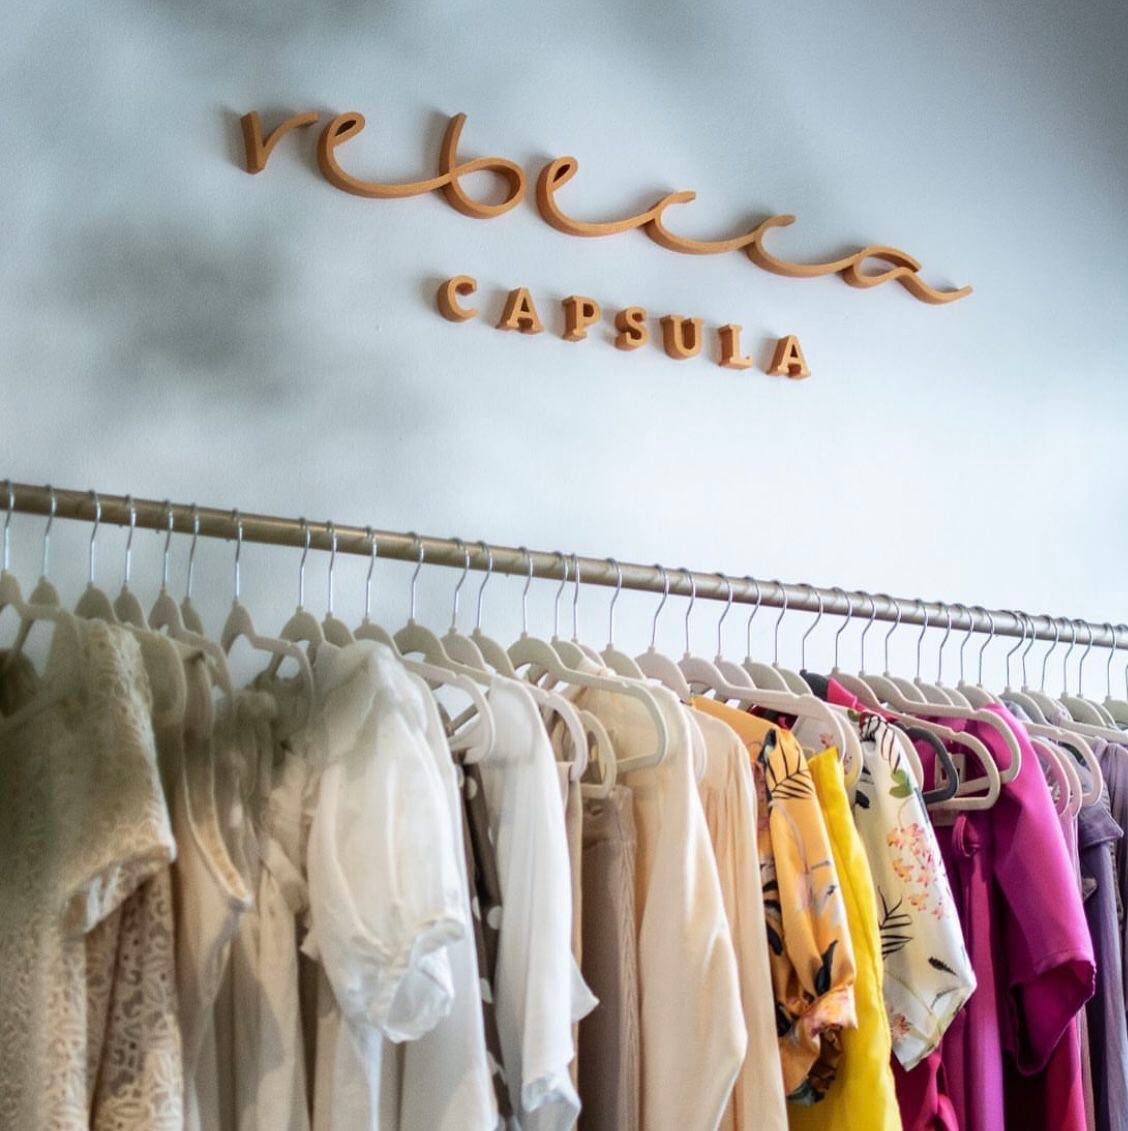 Así empezó Rebecca Cápsula, un emprendimiento de ropa femenina que viste a cientos de mujeres desde 2019.